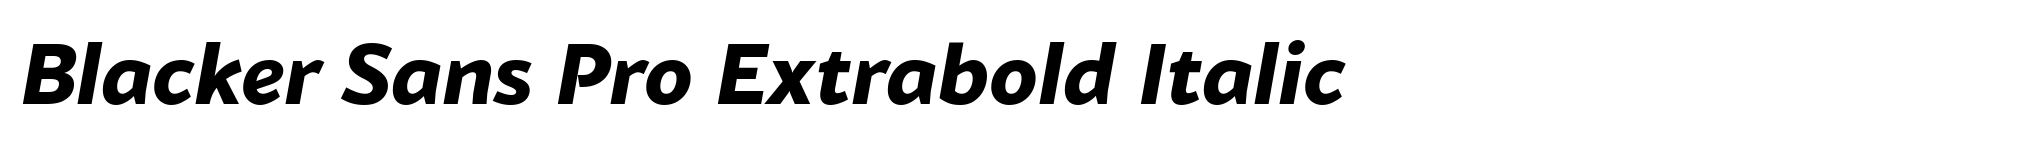 Blacker Sans Pro Extrabold Italic image